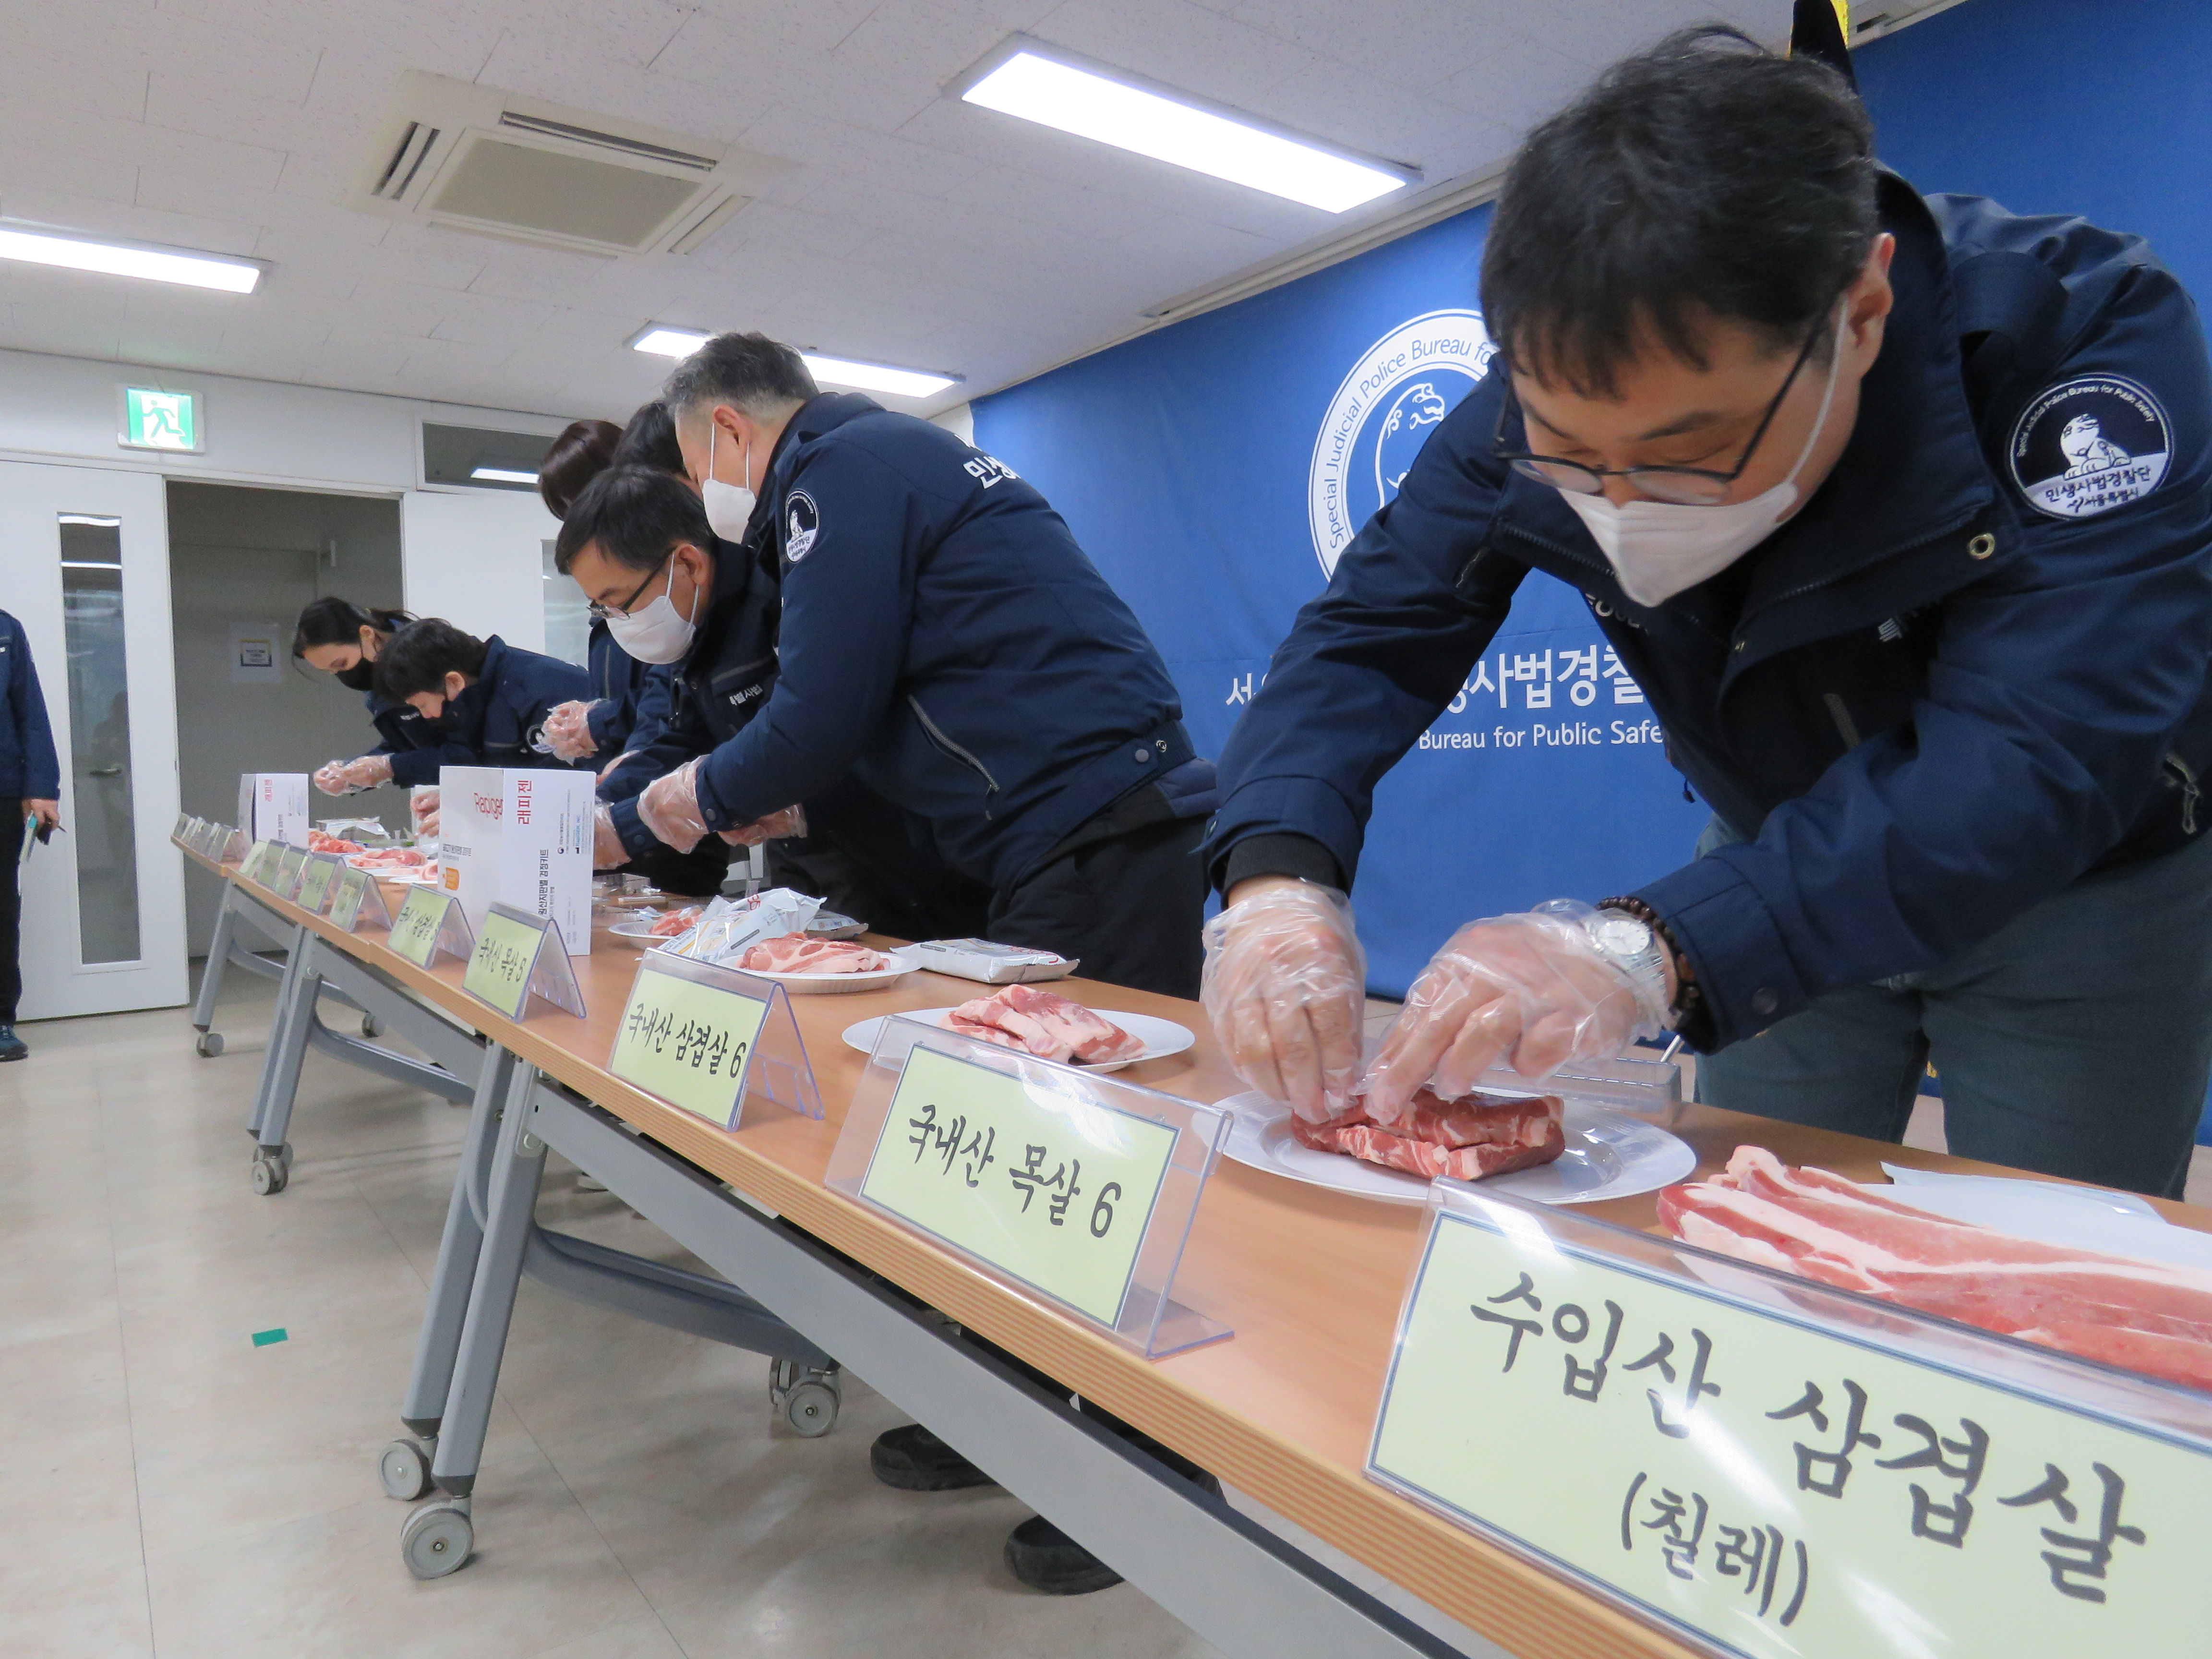 서울시 민생사법경찰단 수사관들이 지난해 개발한 원산지 신속 검정키트를 활용해 돼지고기 원산지를 점검하는 모습을 시연하고 있다. 서울시 제공 